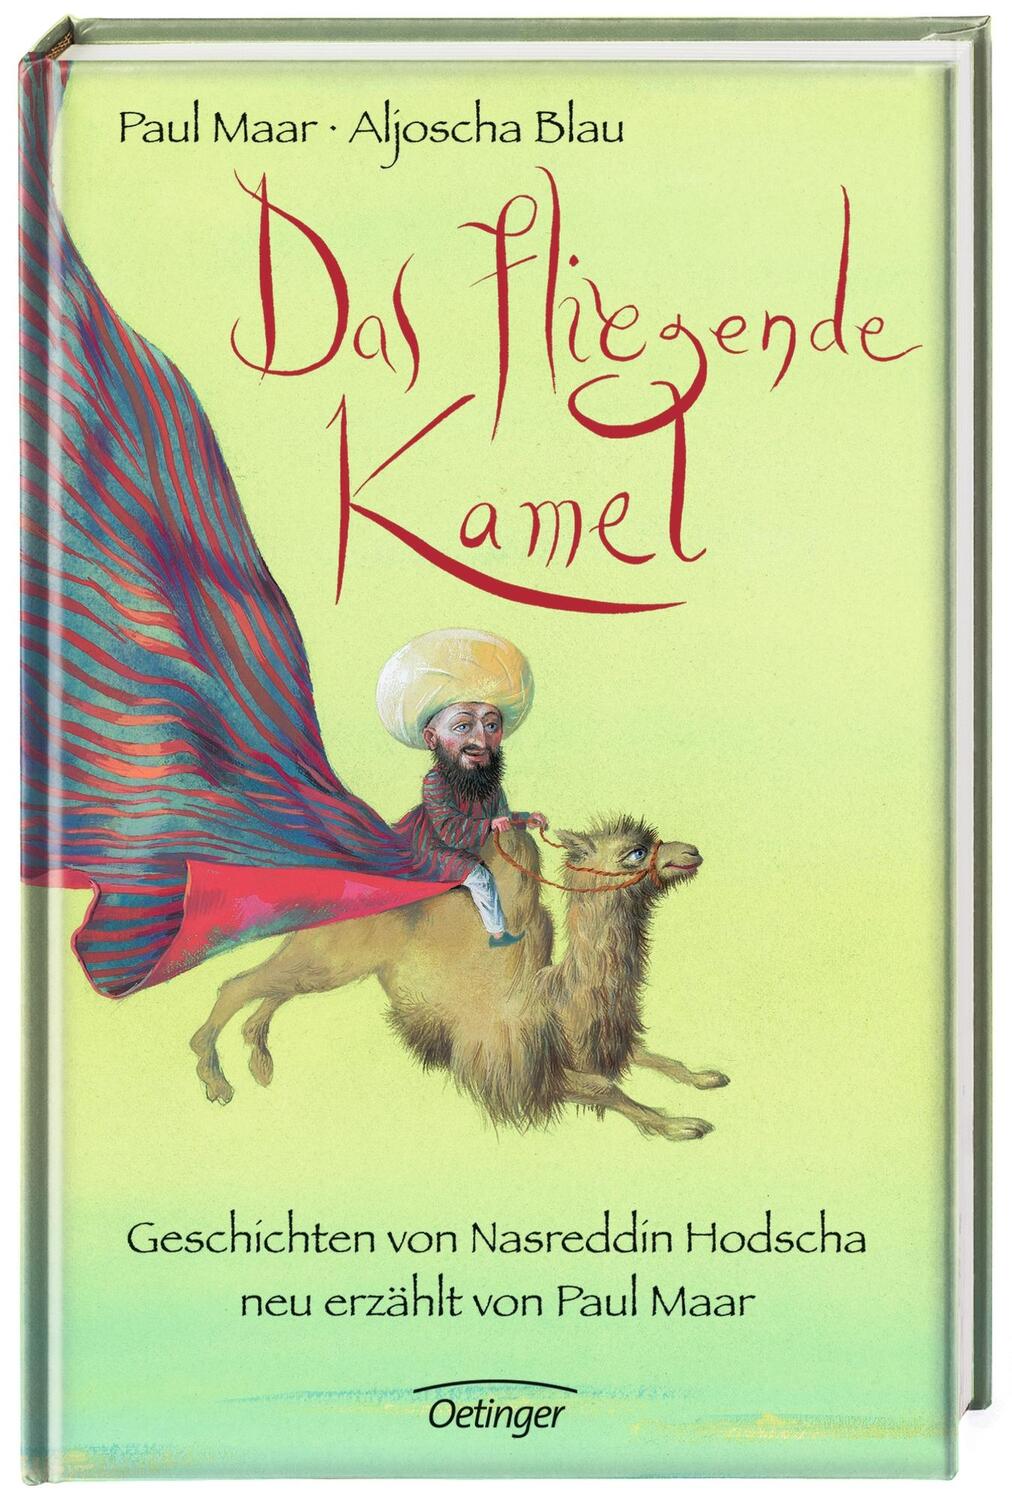 Bild: 9783789142871 | Das fliegende Kamel | Geschichten von Nasreddin Hodscha | Paul Maar